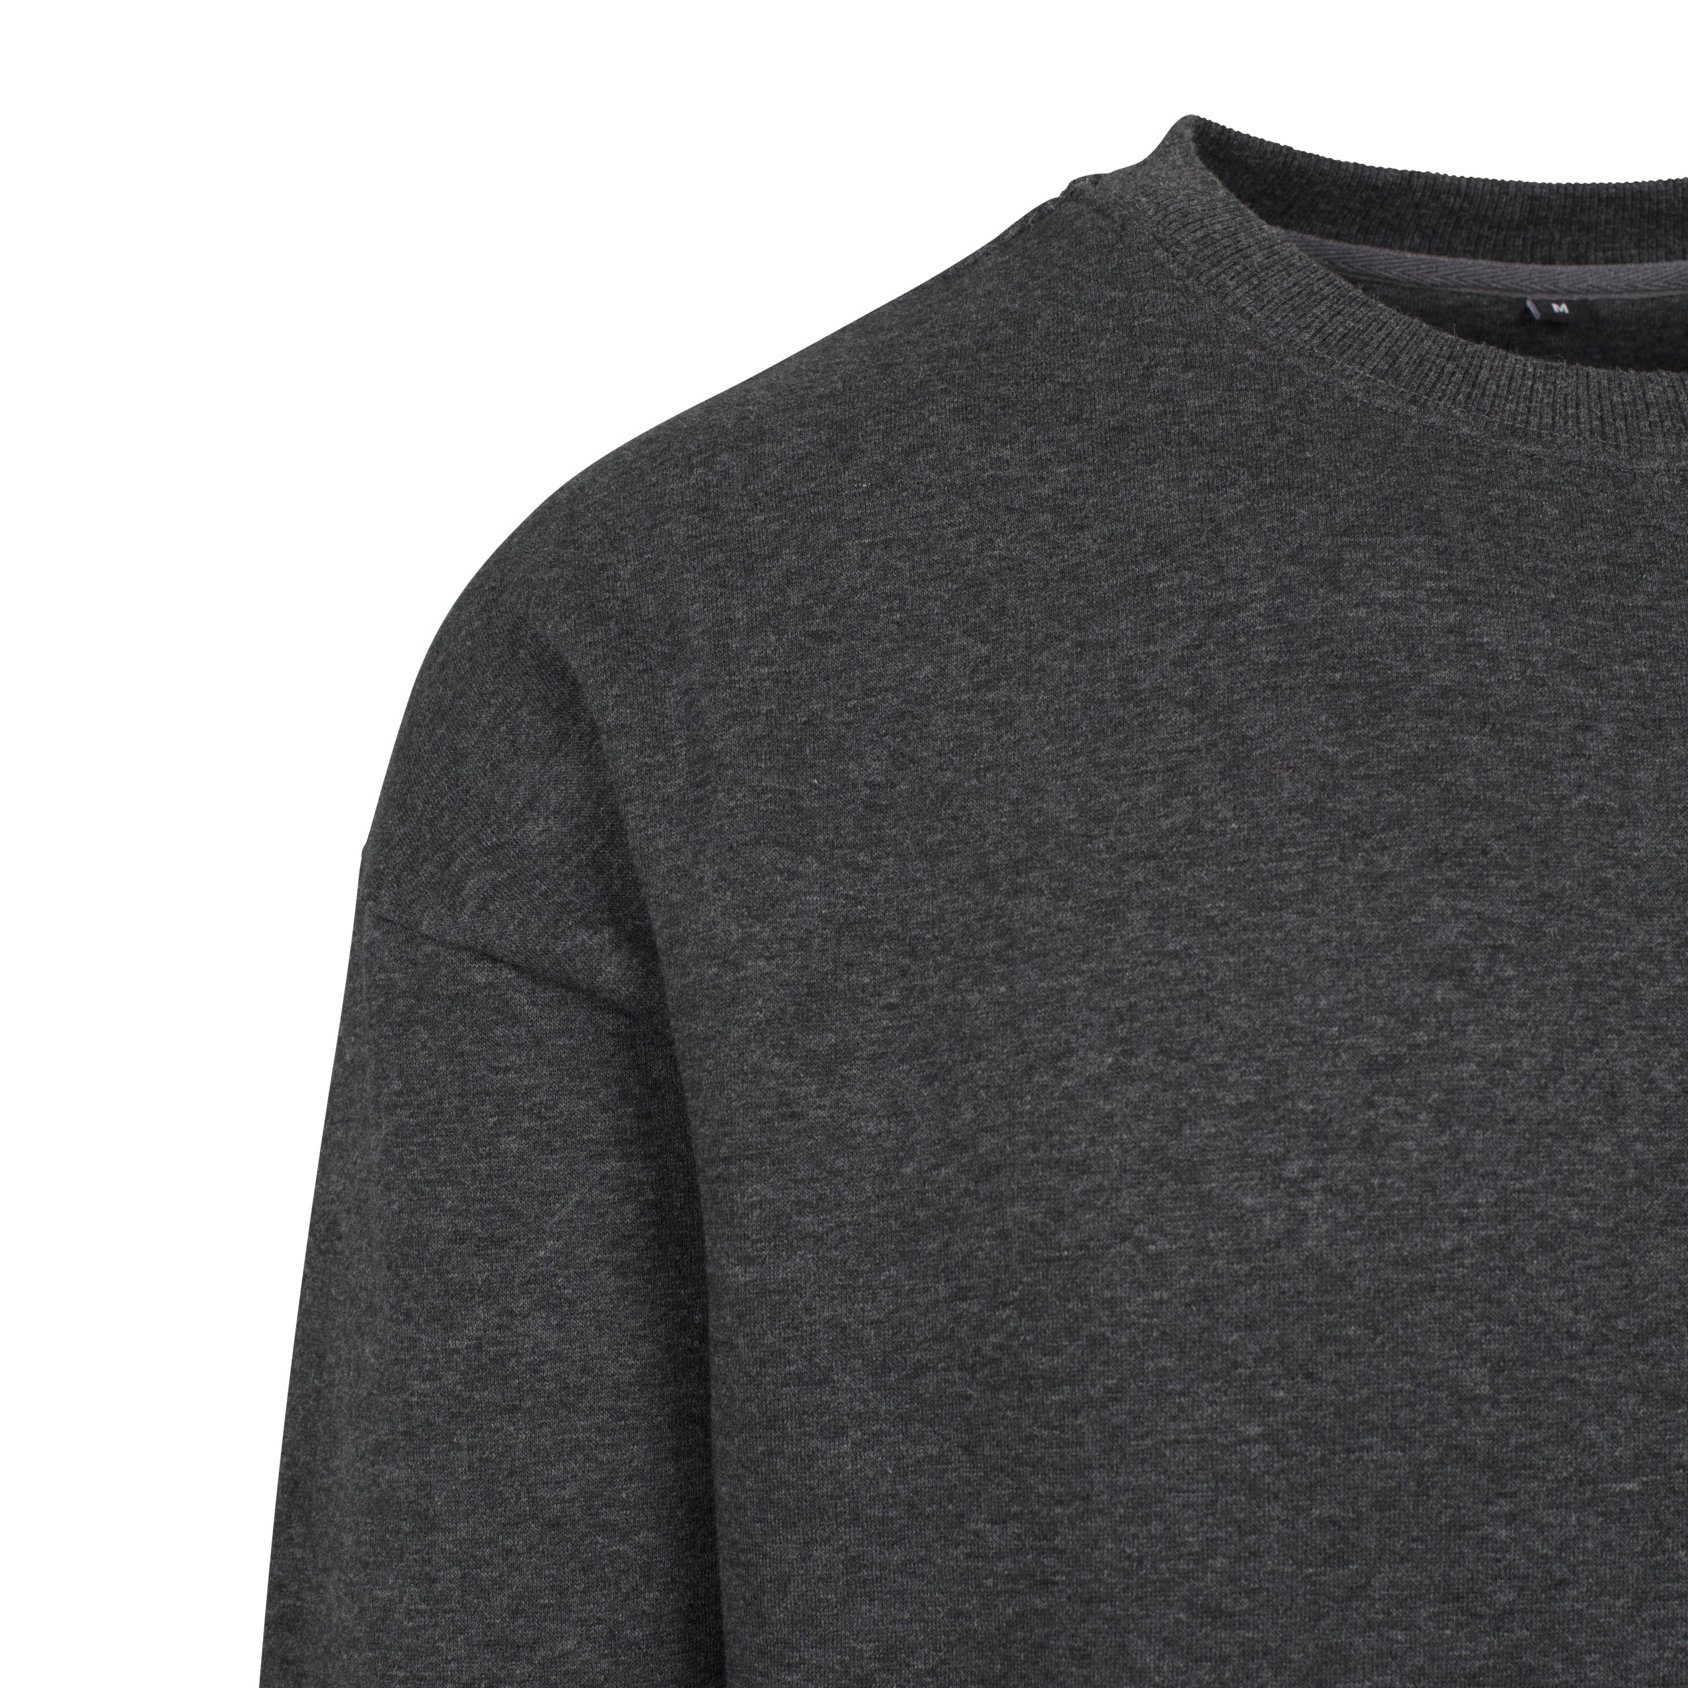 Herren Brand S Sweater Build anthrazit schwerer Your Crewneck Sweatshirt bis Pullover 5XL